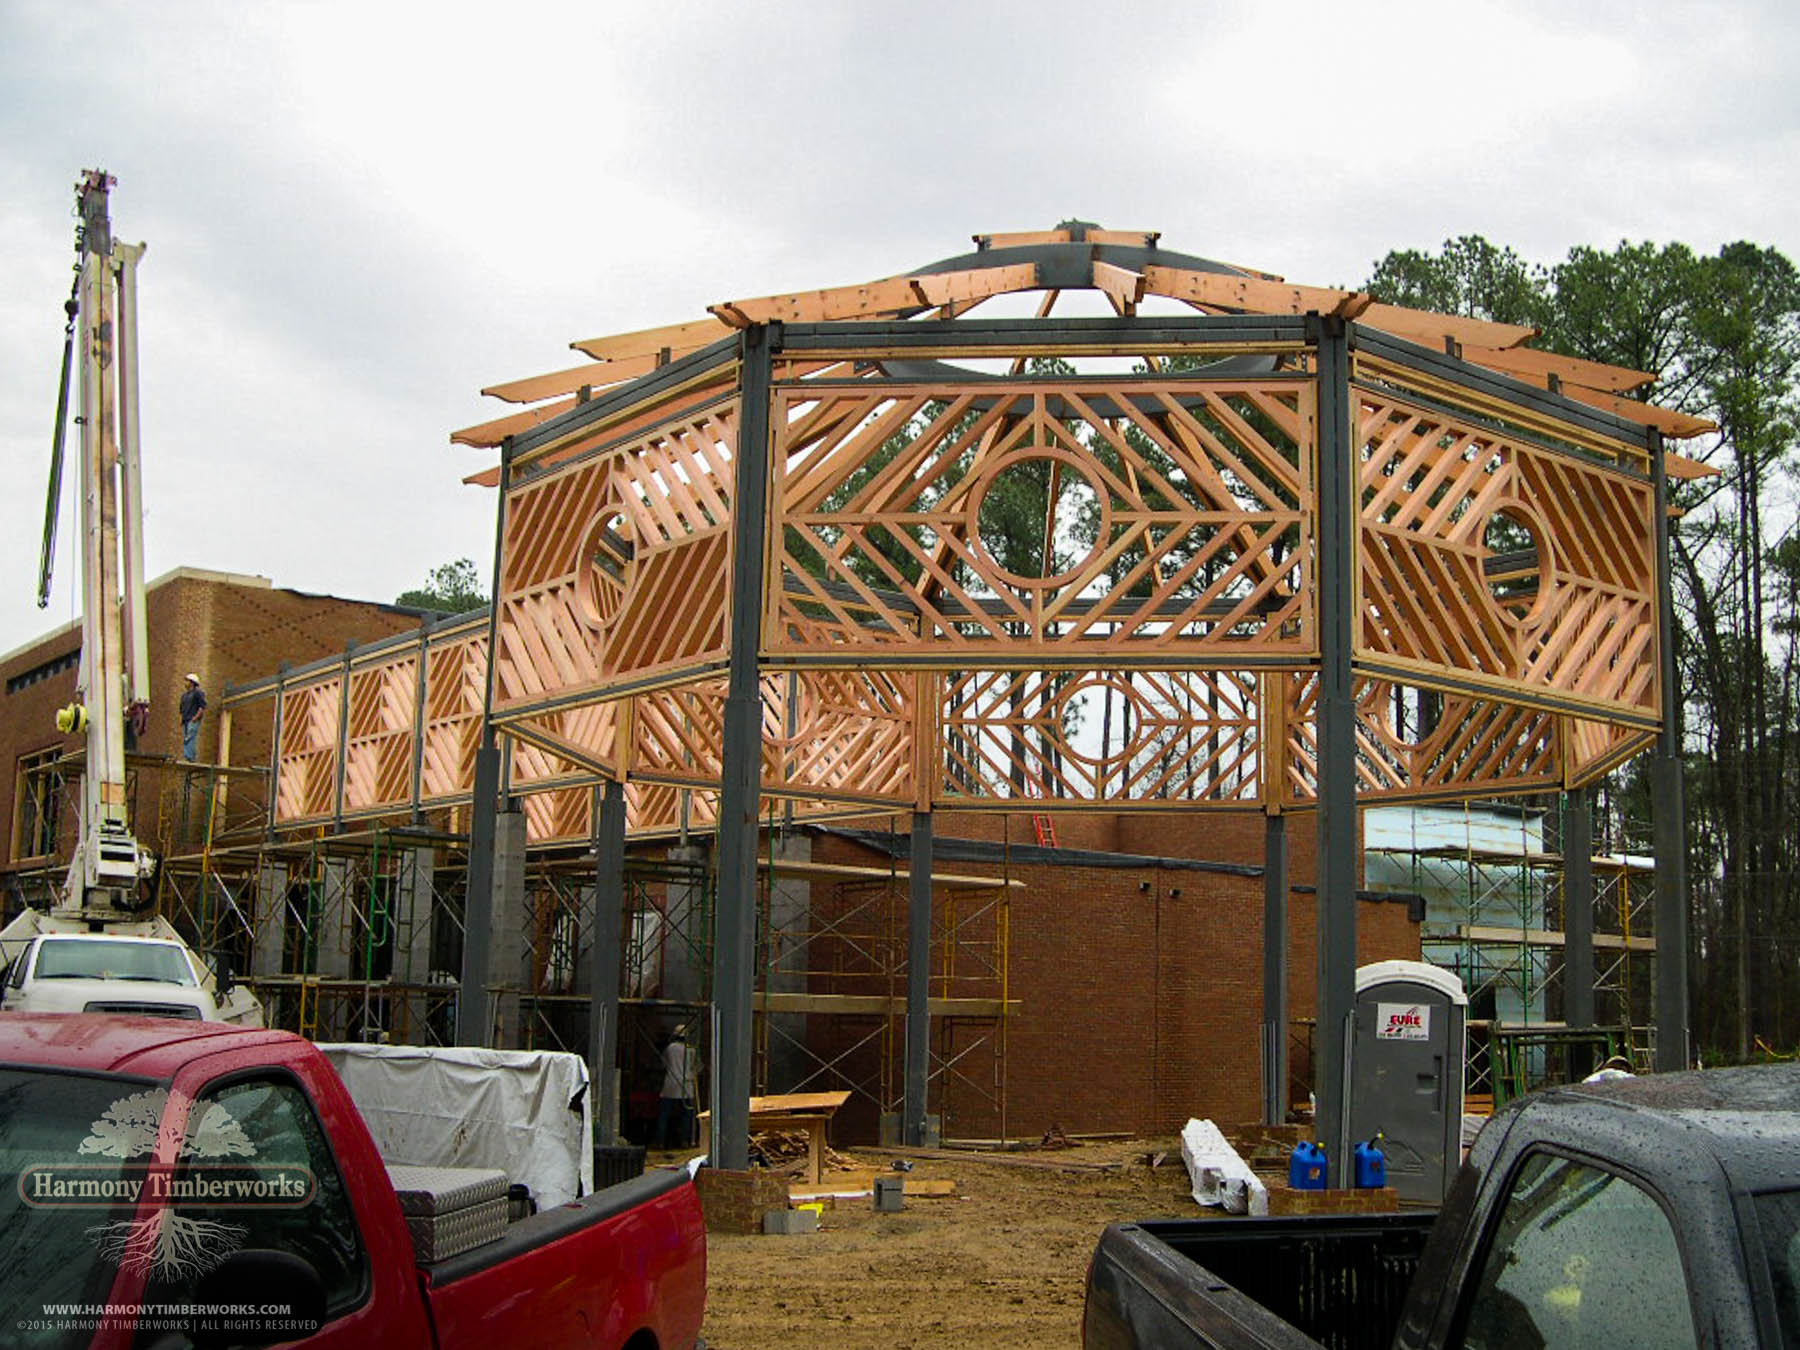 Octagonal Timber Frame Pavilion under construction